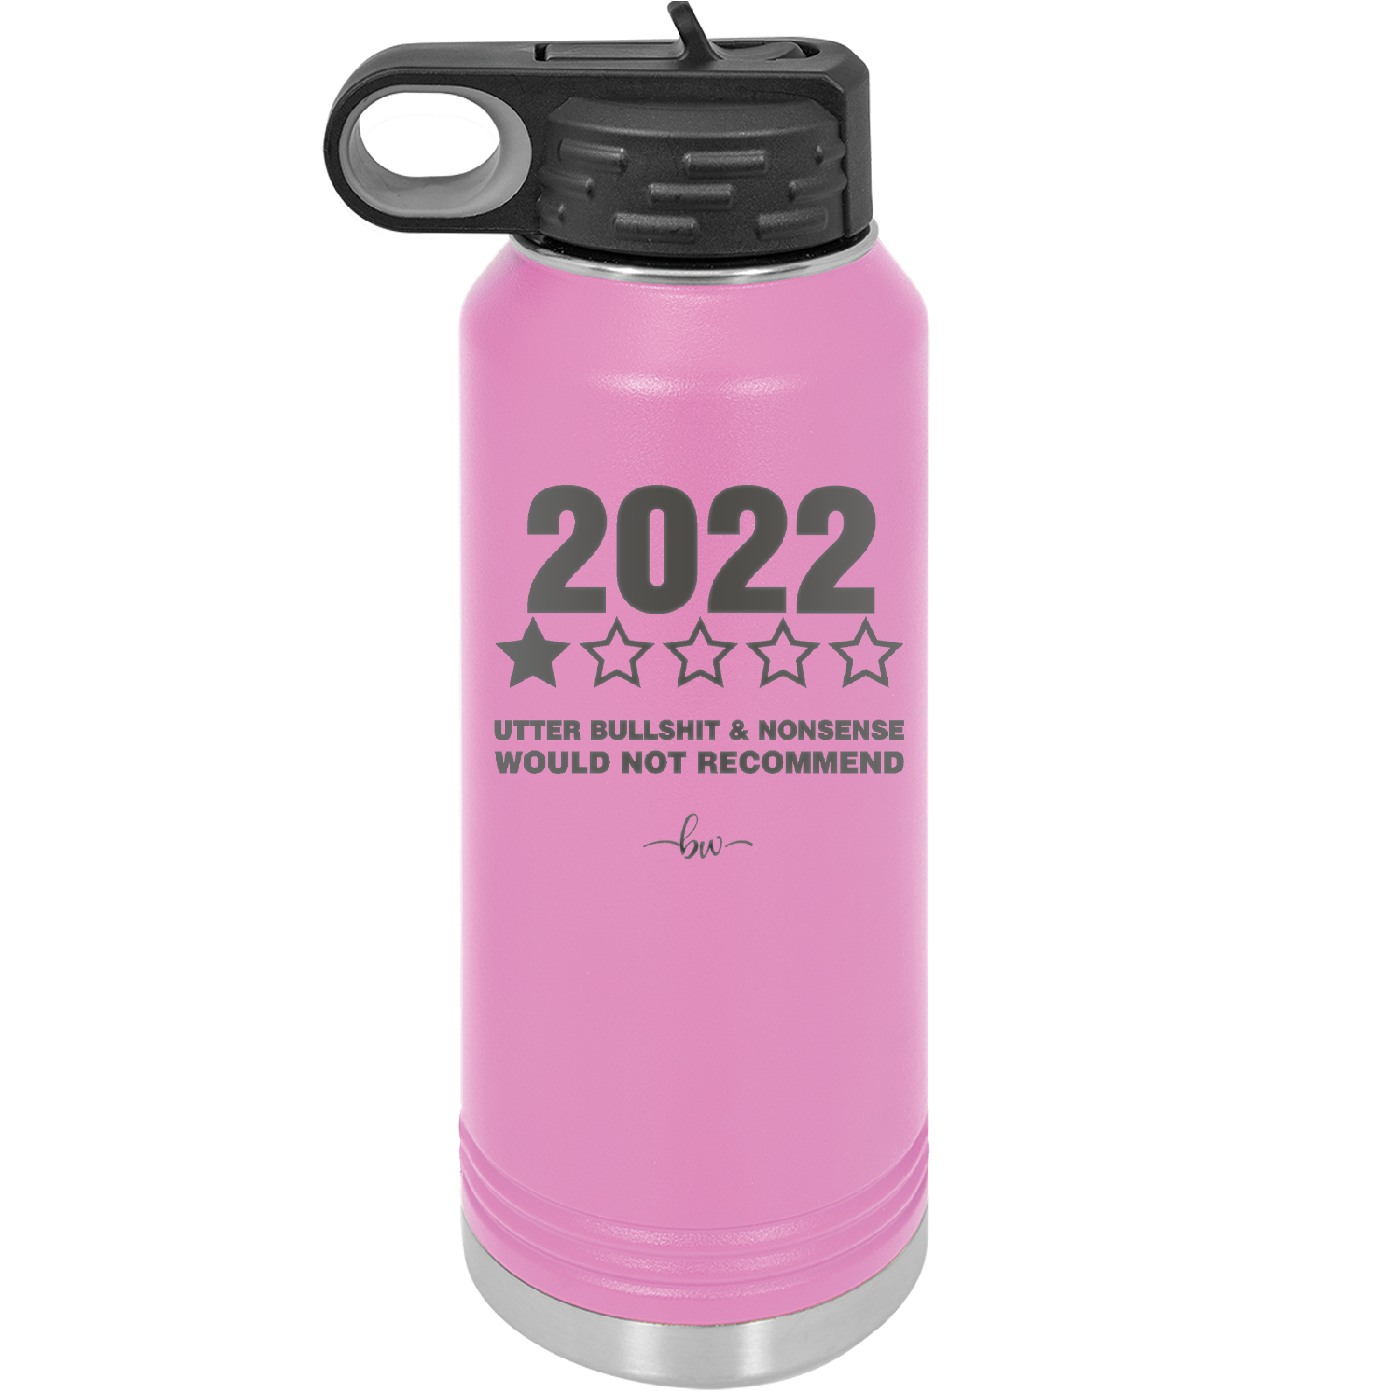 32 oz water bottle  2022 utter bullshitt and nonsense would not recommend- lavender